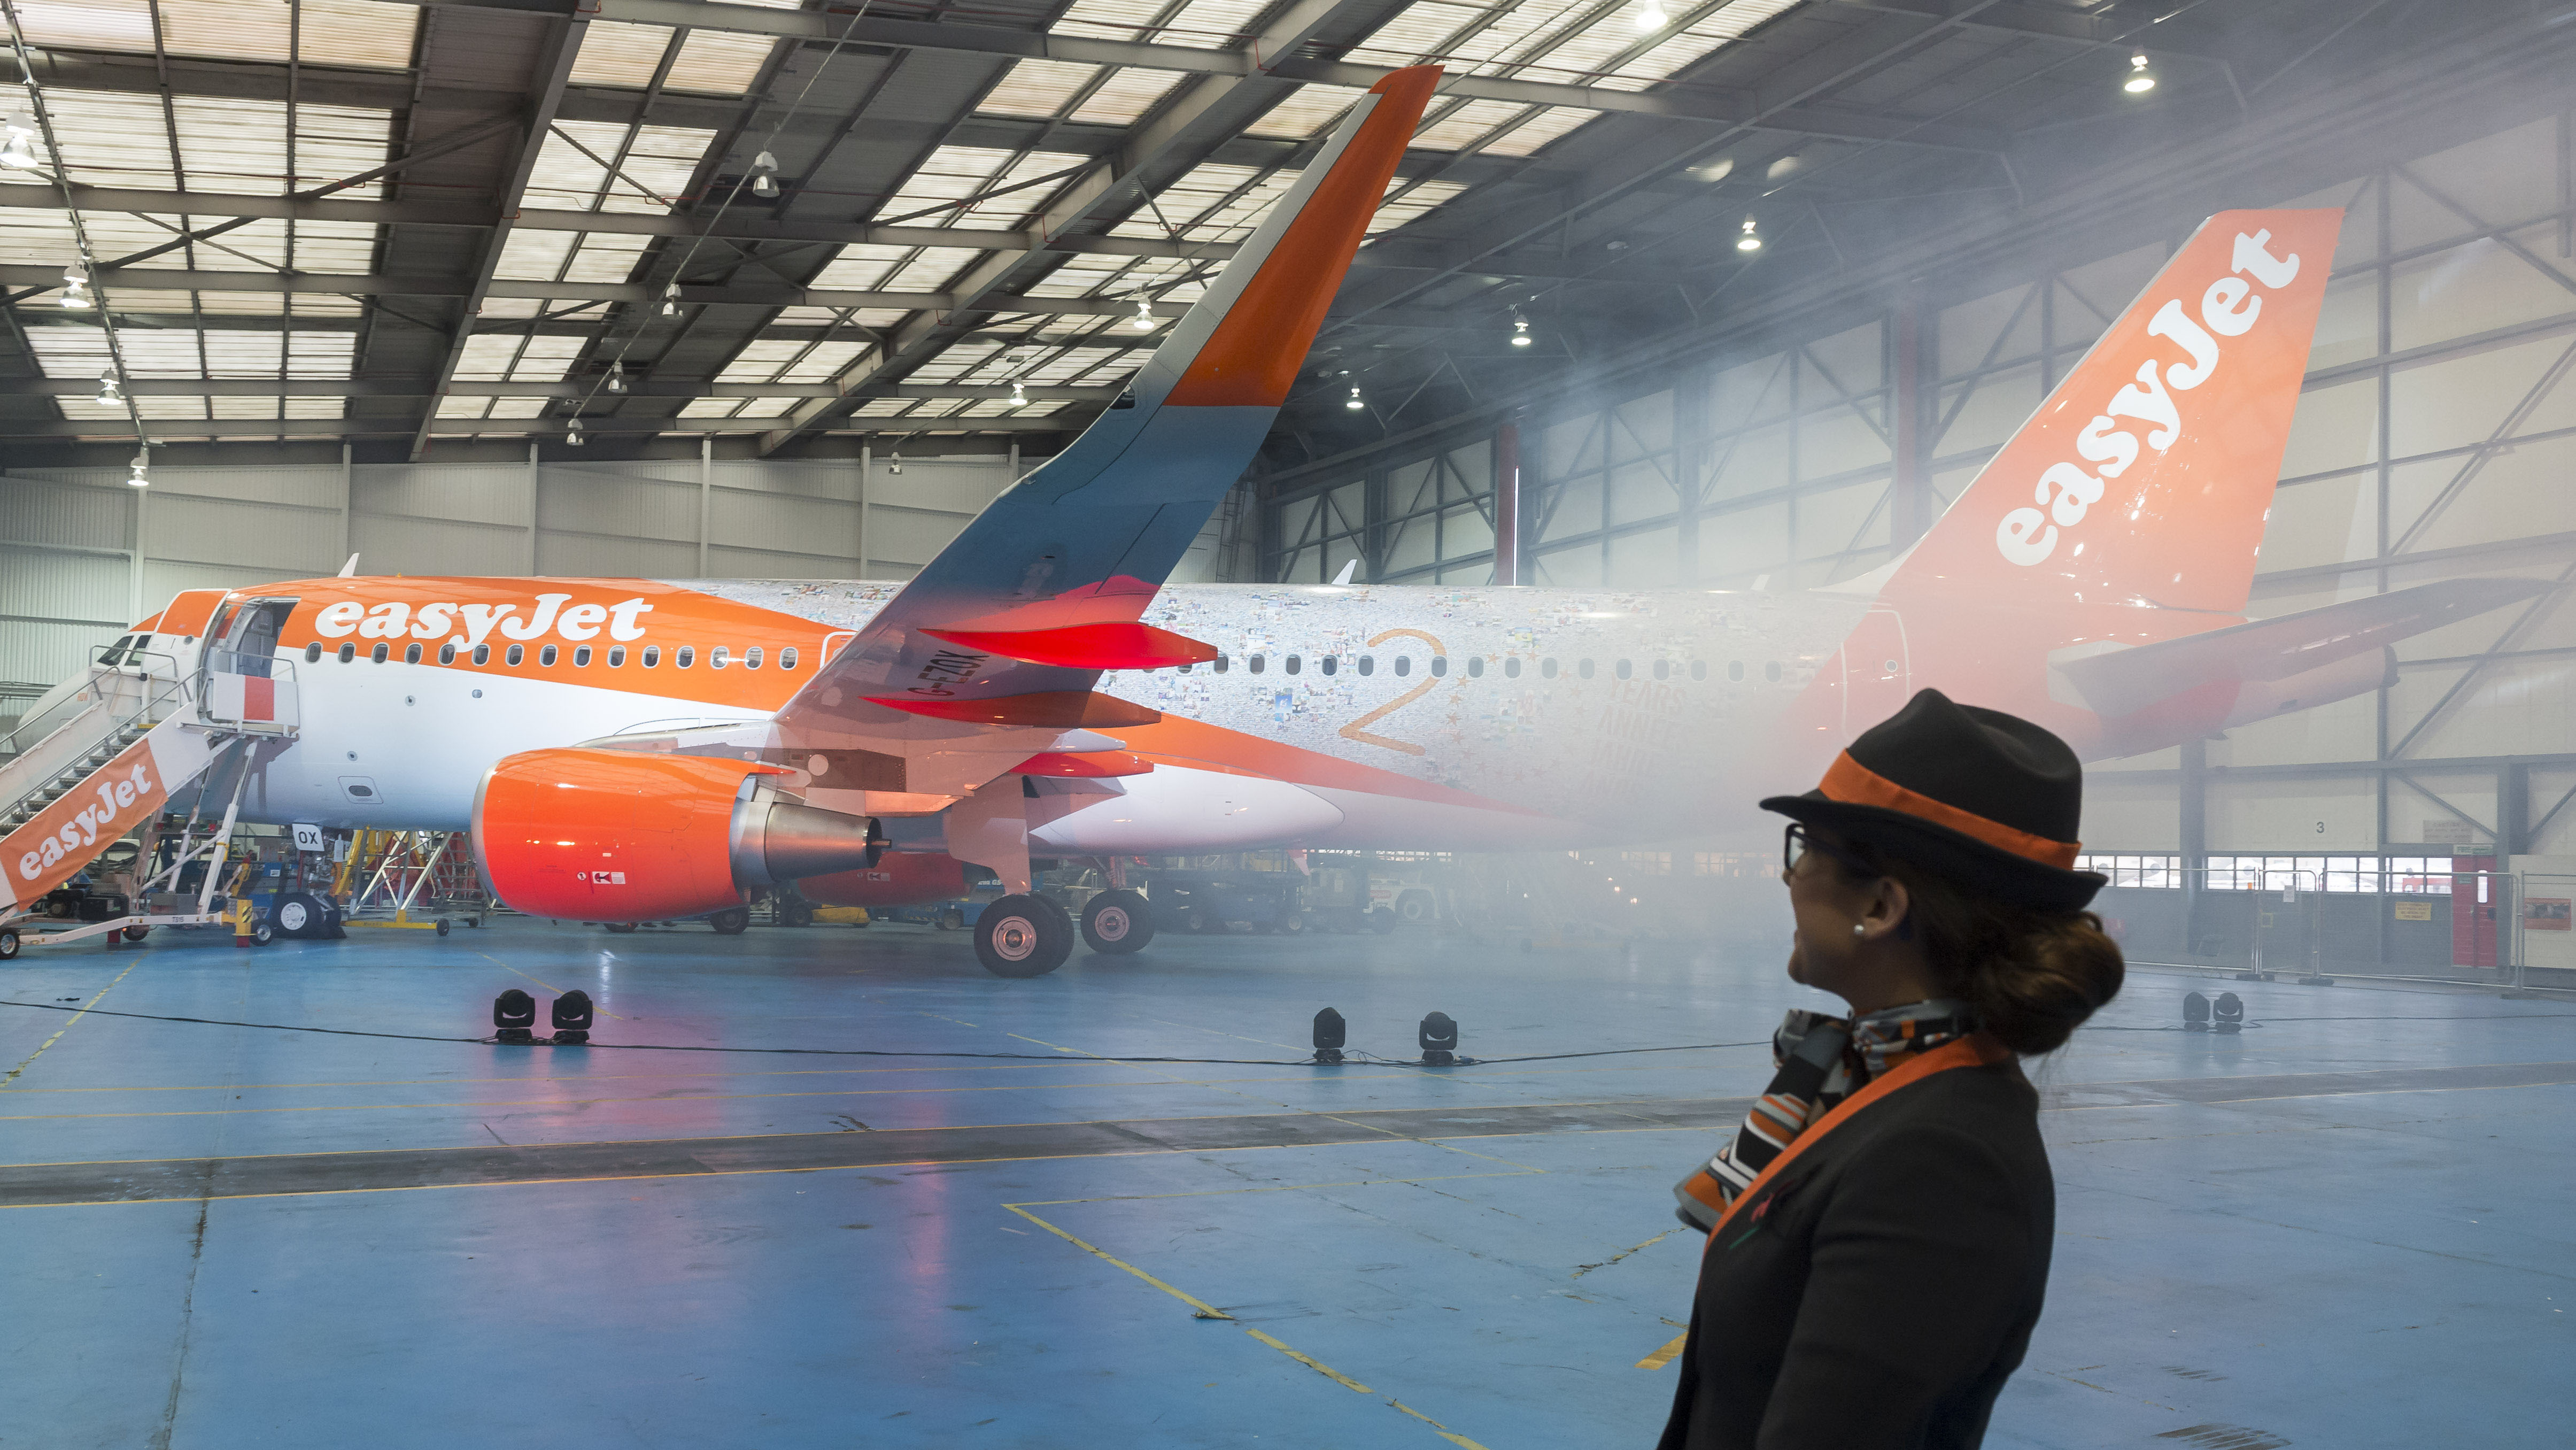 2015-11-10 11:59:38 LONDEN - De viering van het twintig jarig bestaan van luchtvaartmaatschappij easyJet in Hangar89 op Londen Luton. ANP LEX VAN LIESHOUT